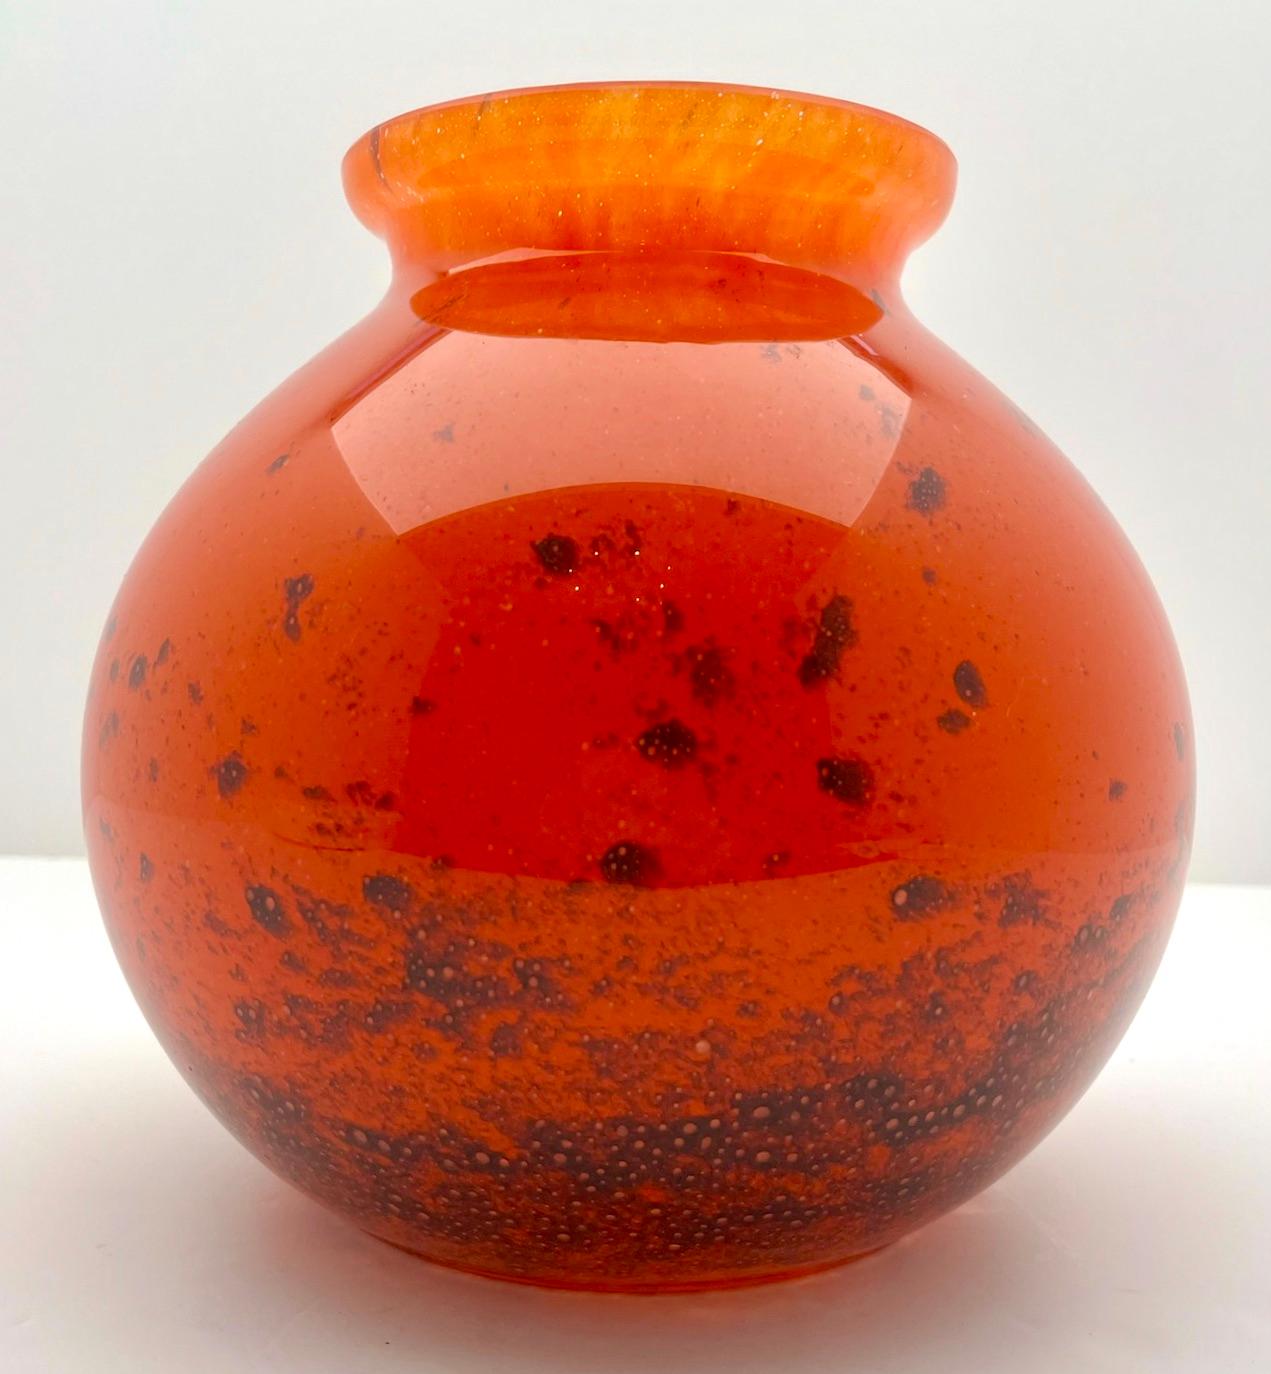  WMF 'Ikora'  Kunstglas-Vase
Deutsche Glasvase von Karl Wiedmann für WMF Ikora, 1930er Jahre Baushaus Art Deco.

Eine dekorative 